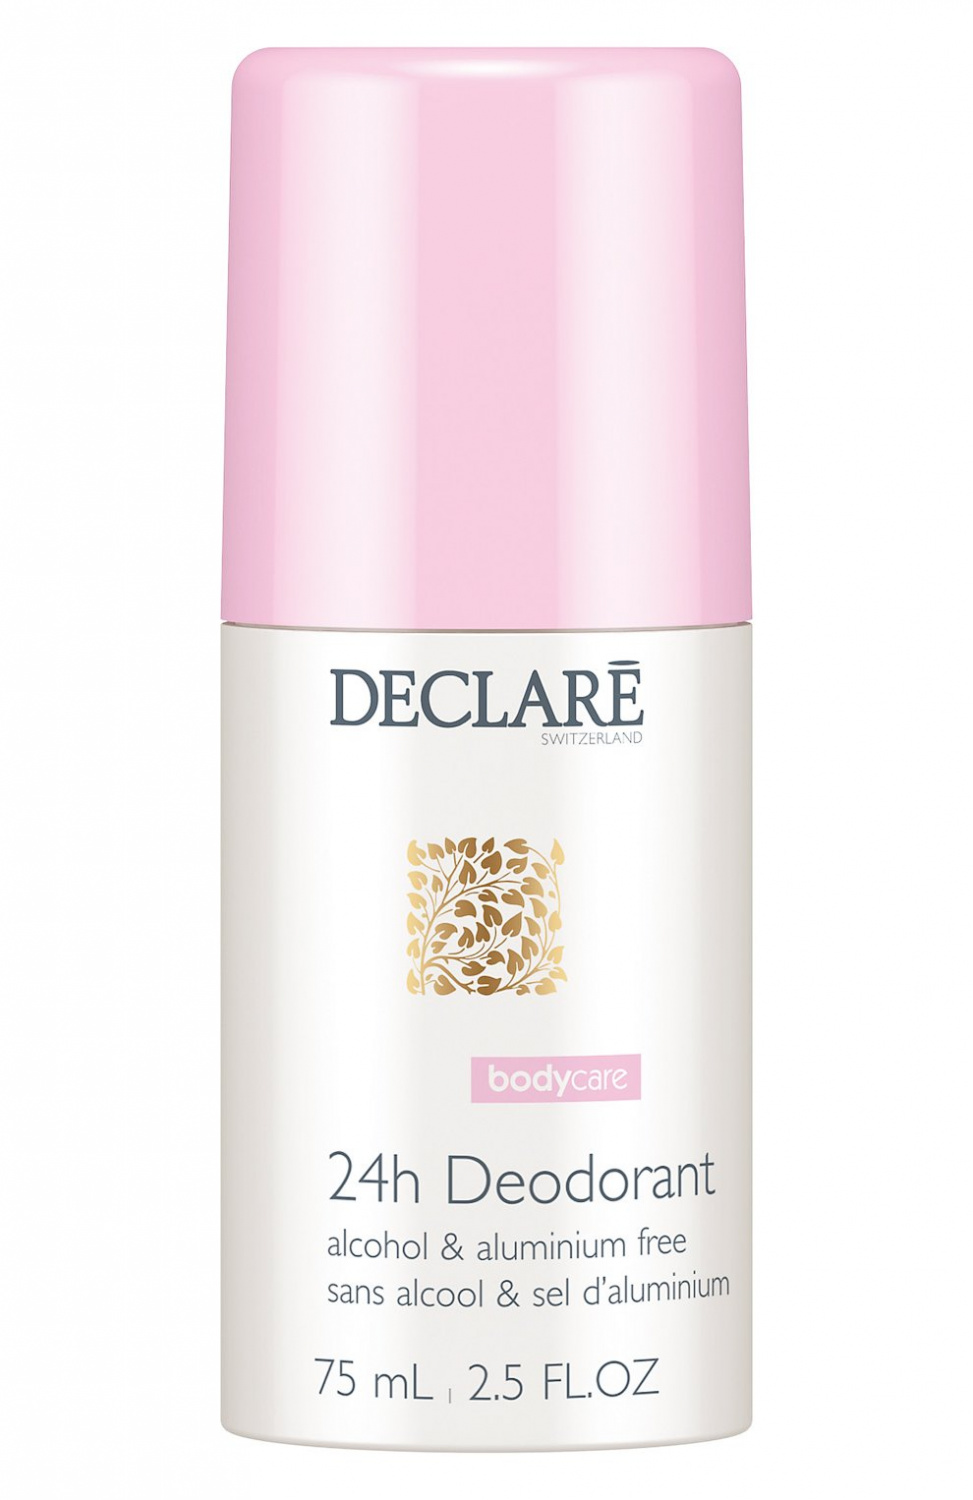 Declare 24h Deodorant 75ml. - интернет-магазин профессиональной косметики Spadream, изображение 32936